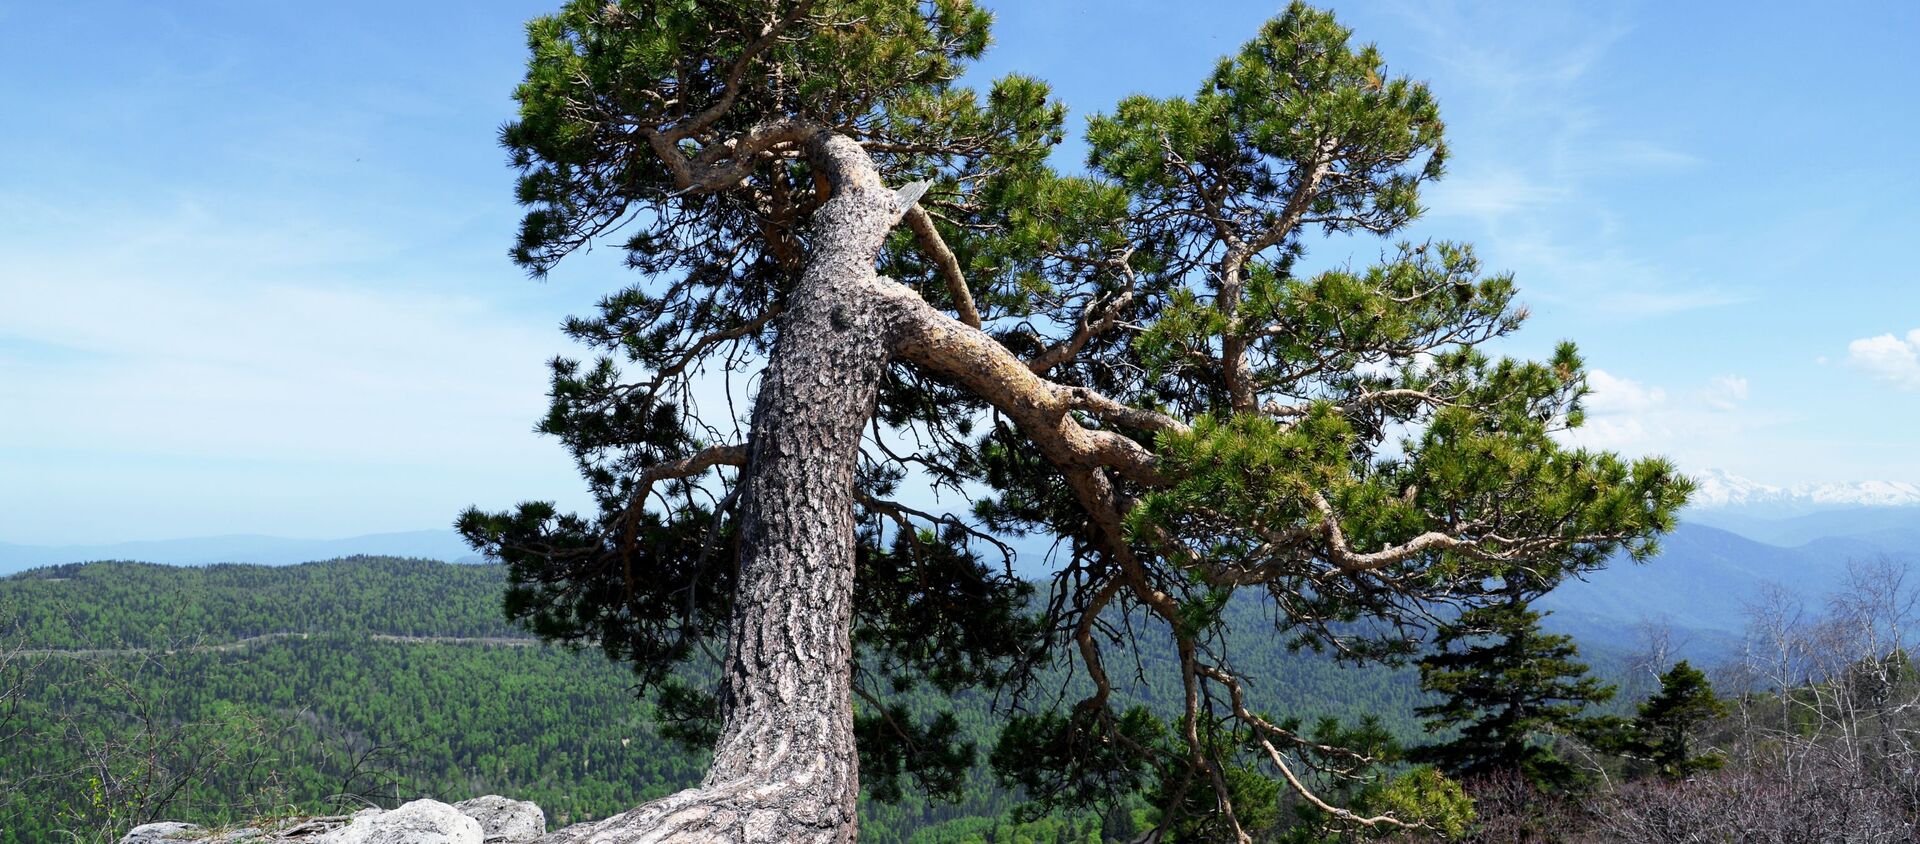  شجرة على حافة جبل في منطقة لاغو-ناكي من المحمية الطبيعية القوقازية باسم خ. غ. شابوشنيكوف - سبوتنيك عربي, 1920, 29.01.2021